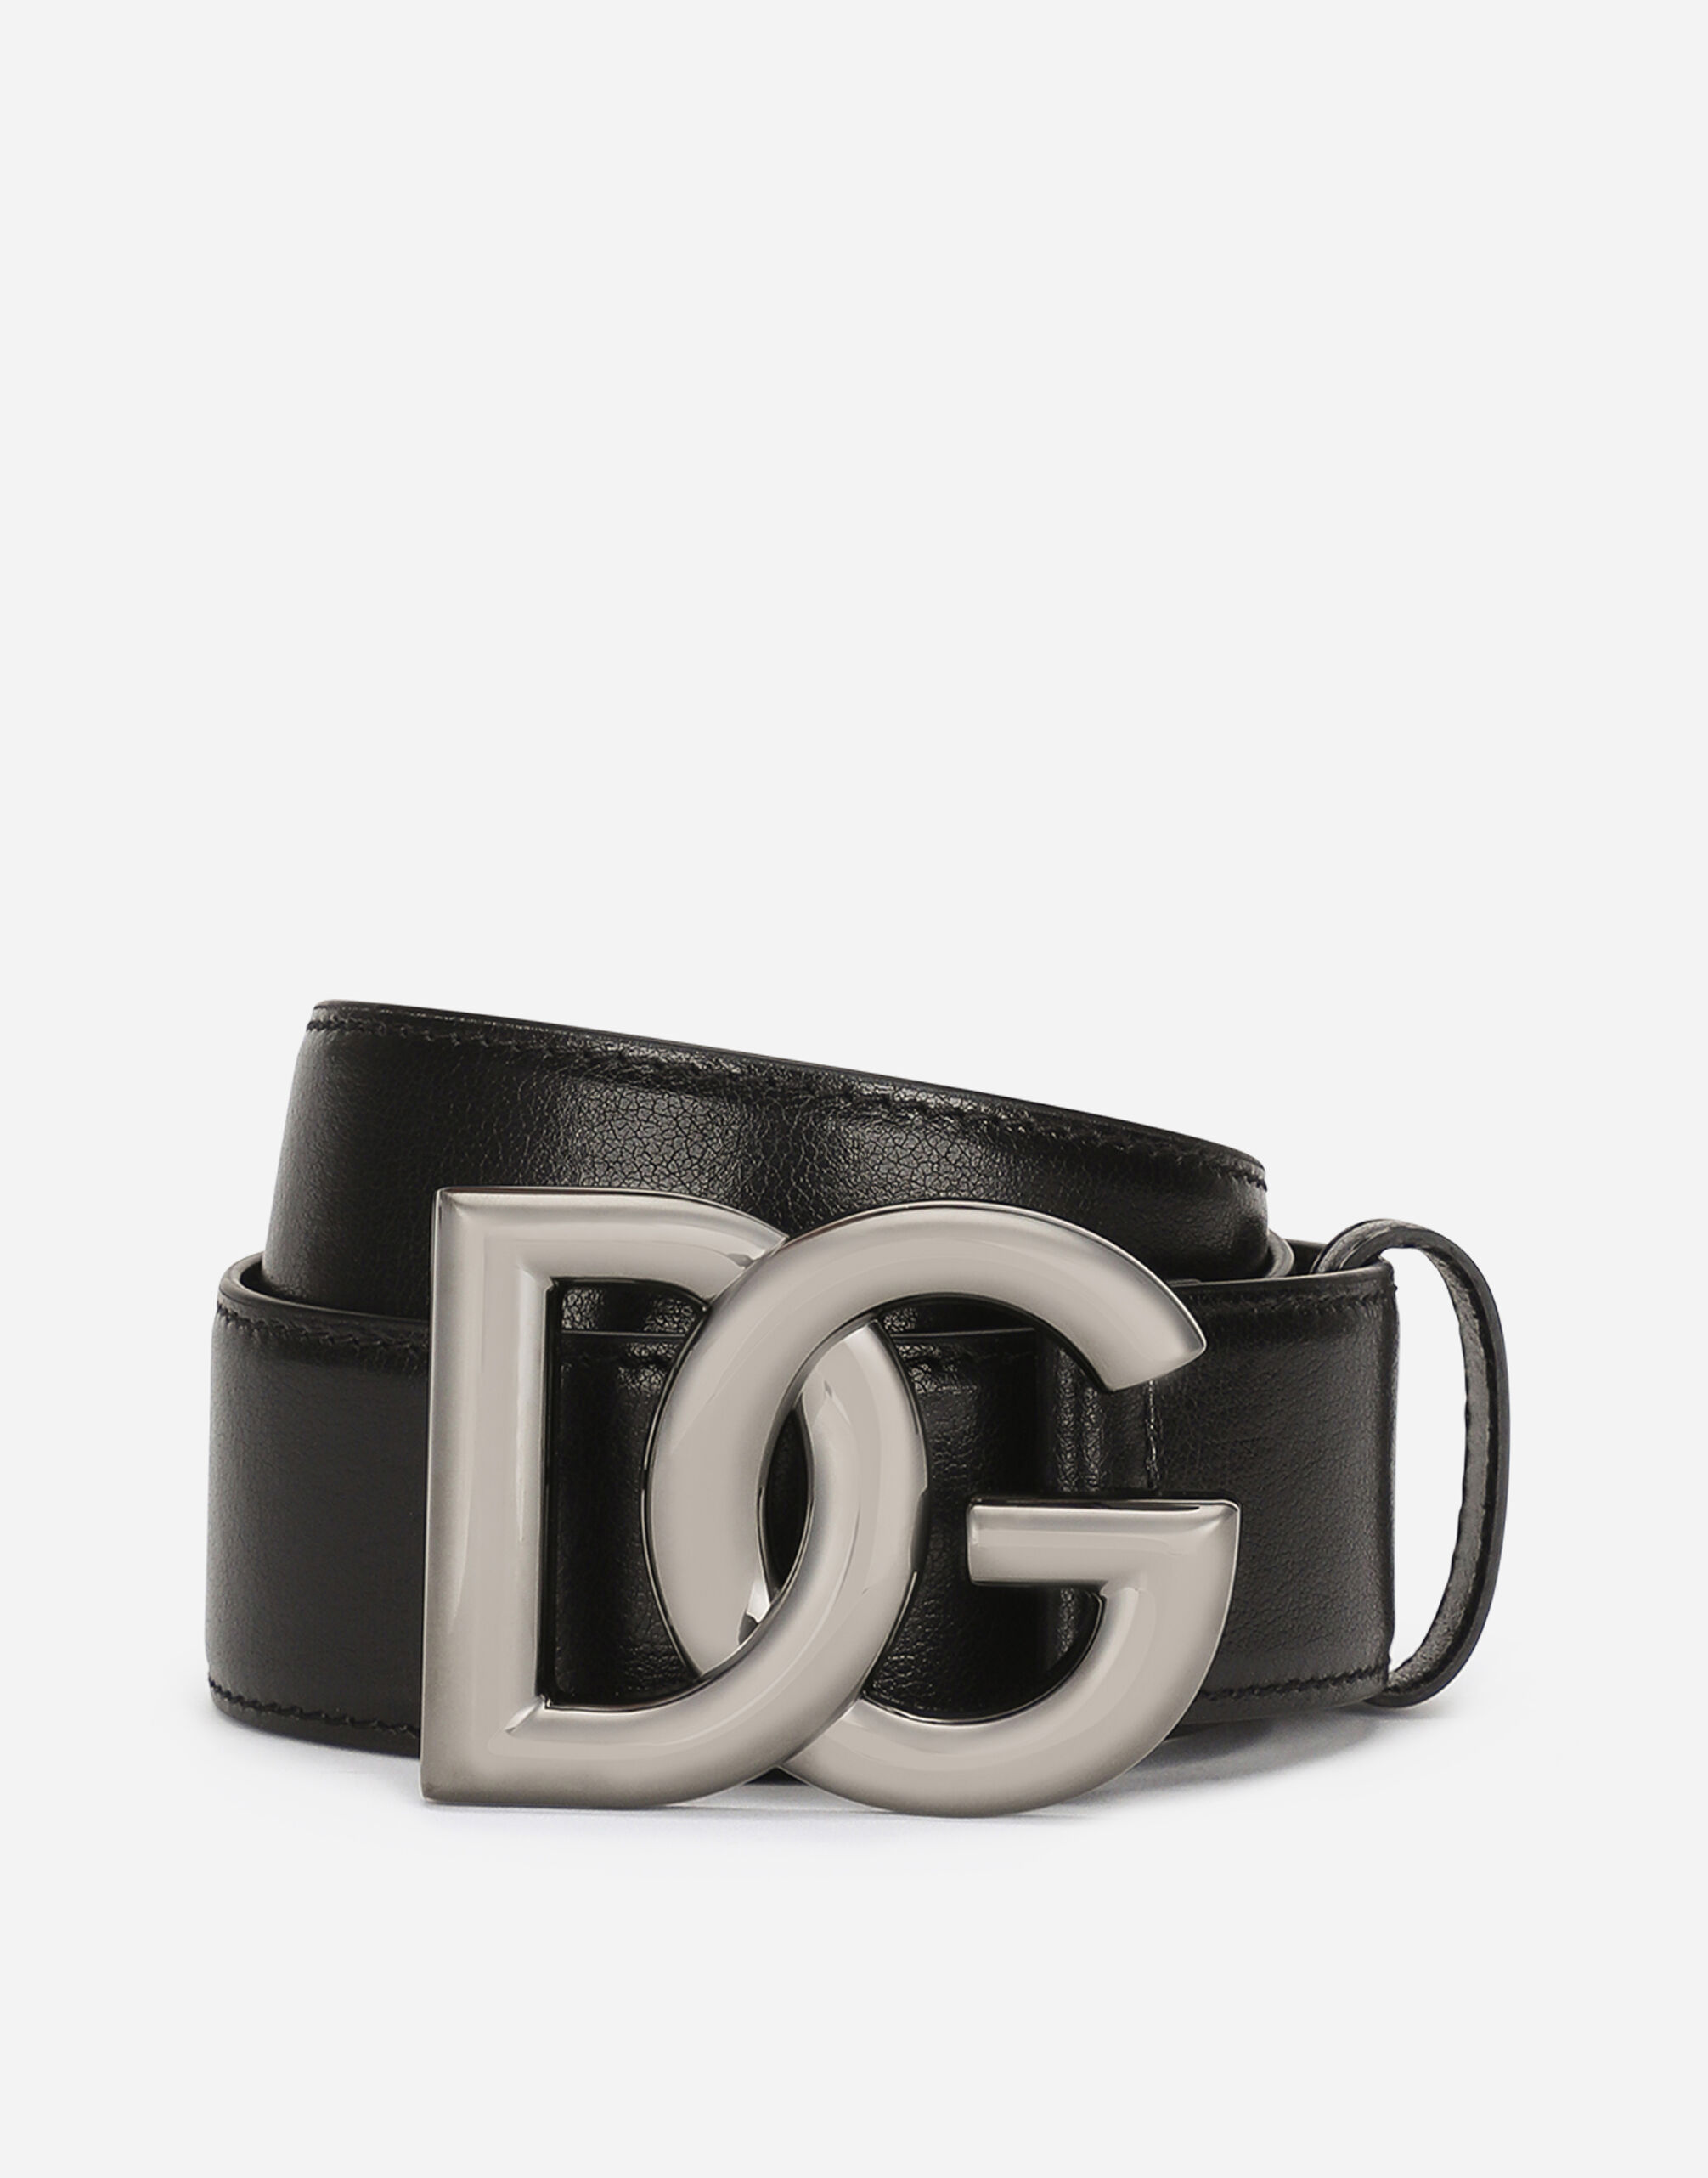 Dolce & Gabbana Cinturón en piel de becerro con hebilla logotipo DG cruzado Negro BC4646AX622